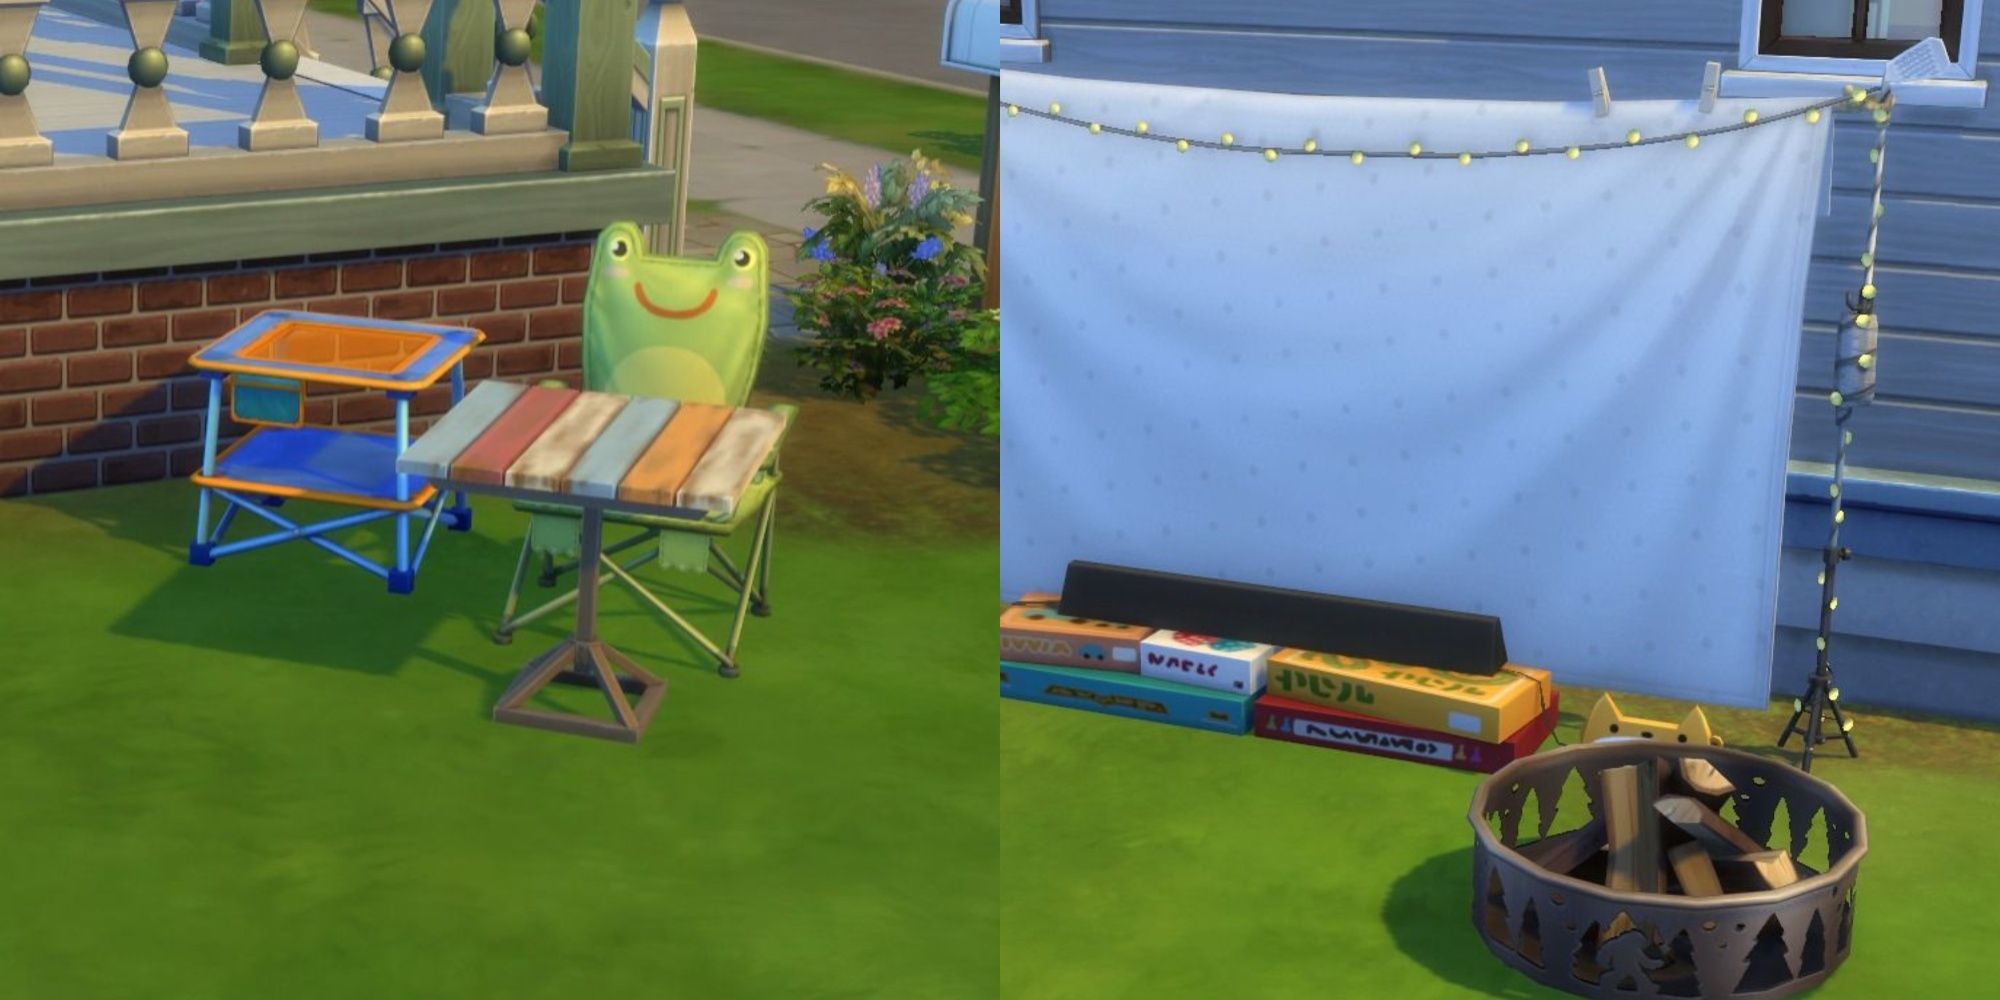 Das Sims 4 Little Campers Kit: Geteiltes Bild eines Froggy-Stuhls und einer Feuerstelle